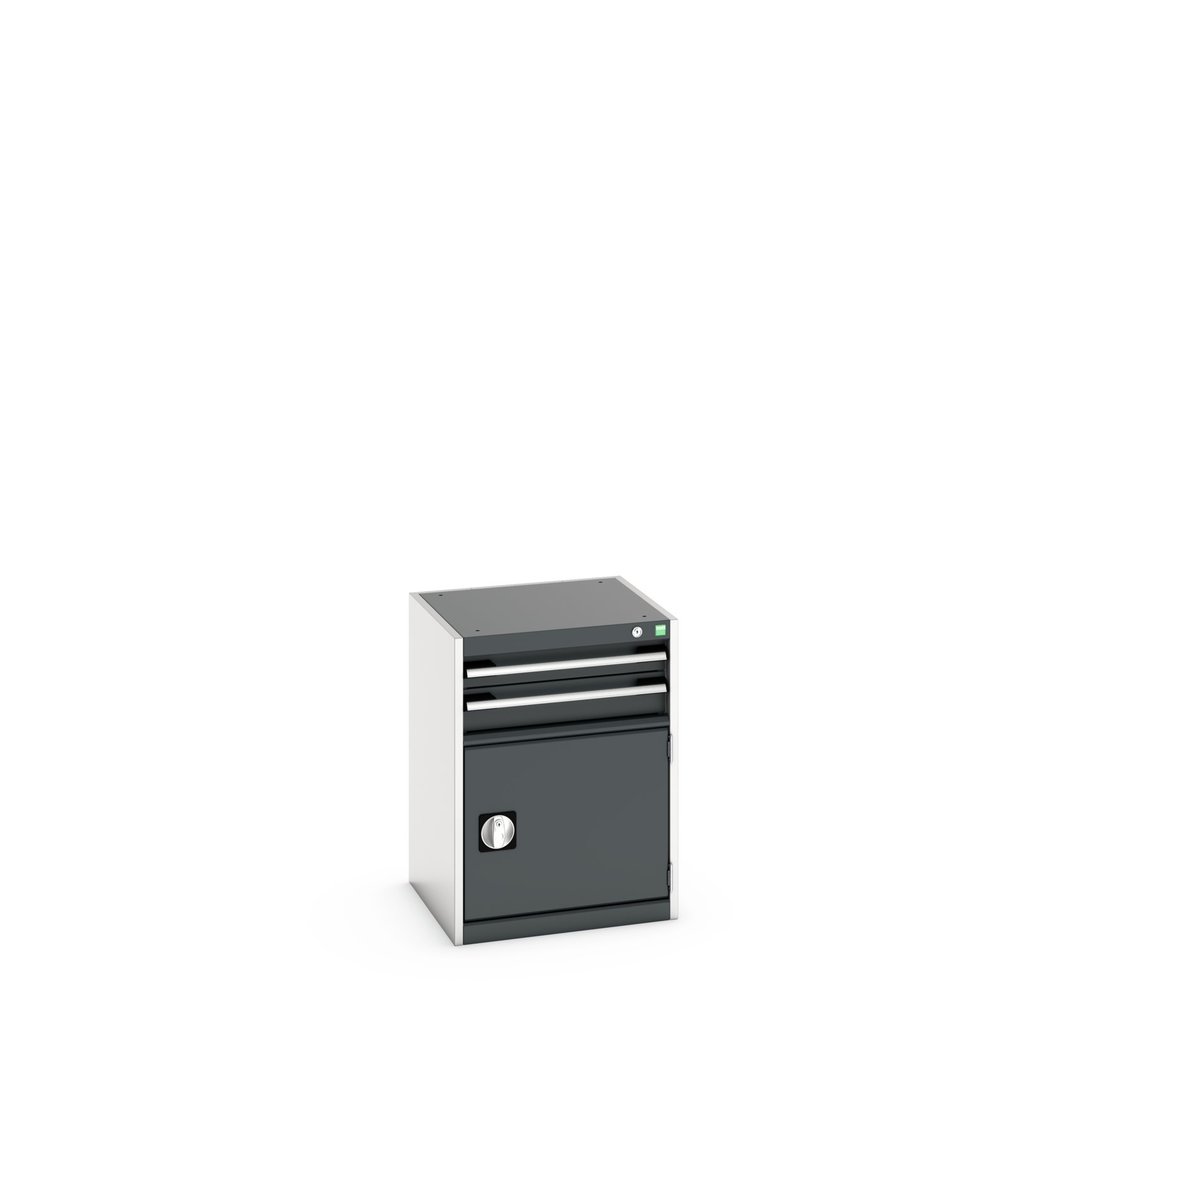 40010017. - cubio drawer-door cabinet